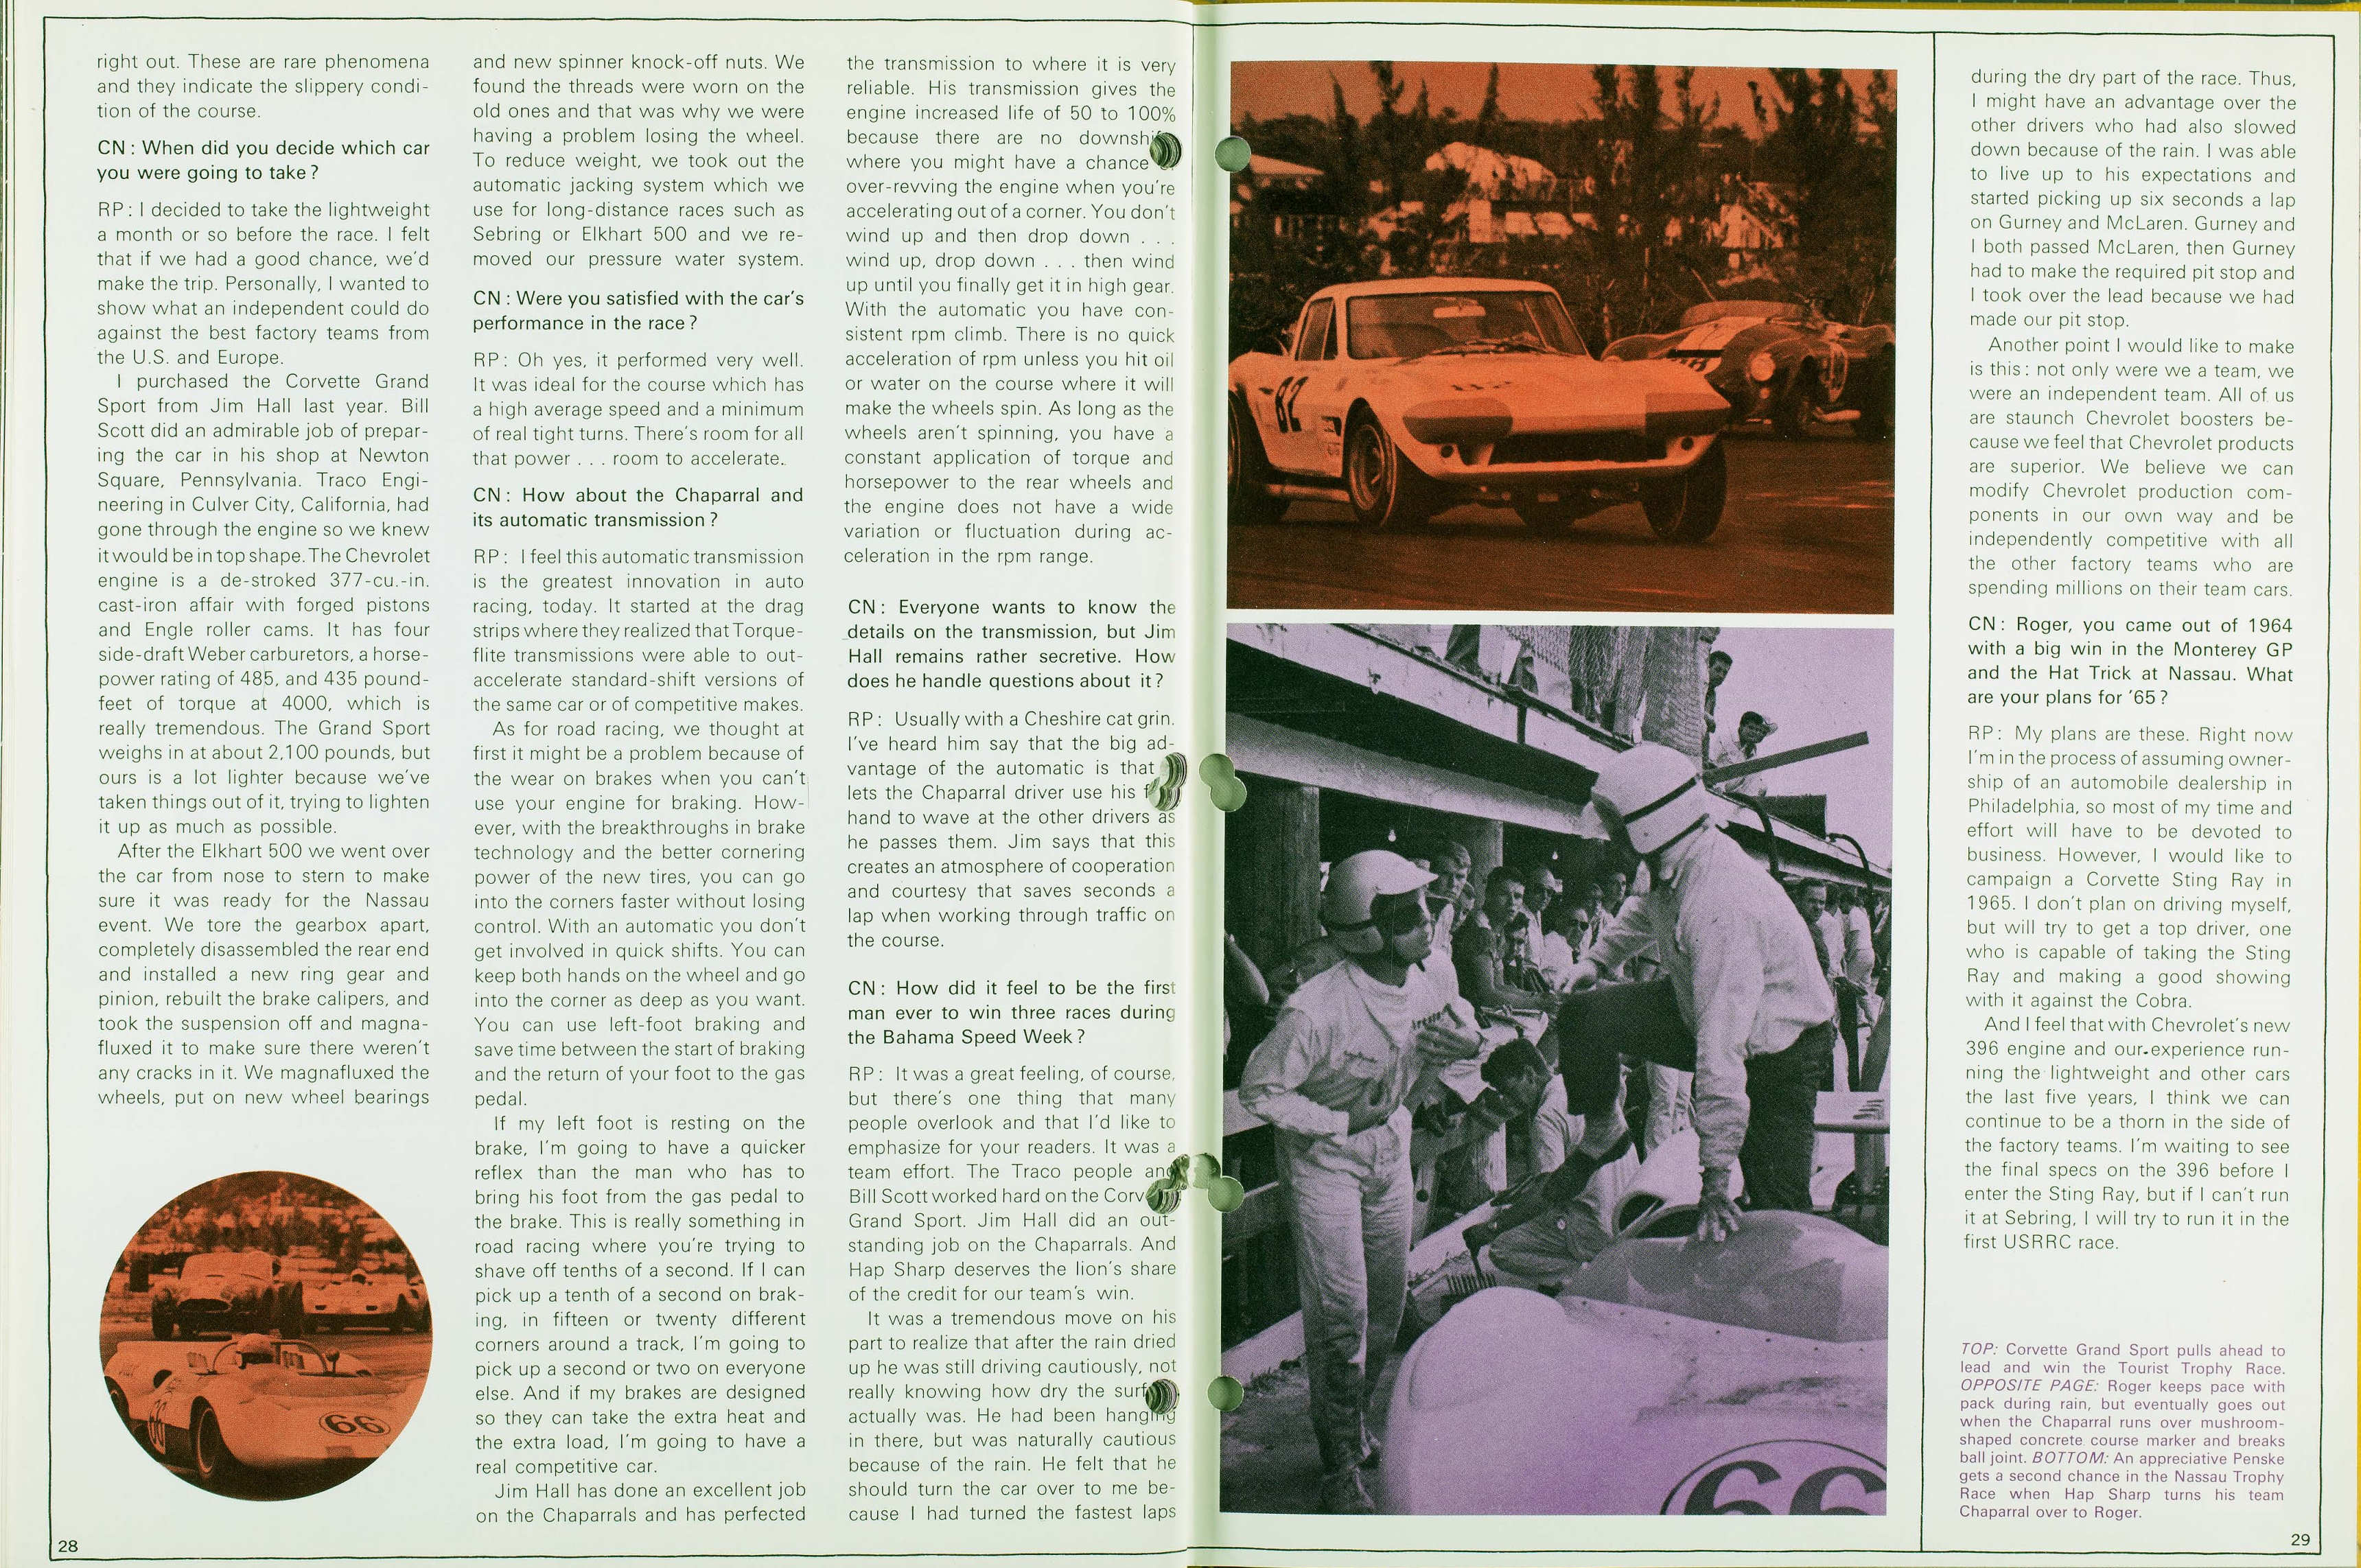 1965_Corvette_News_V8-3-28-29